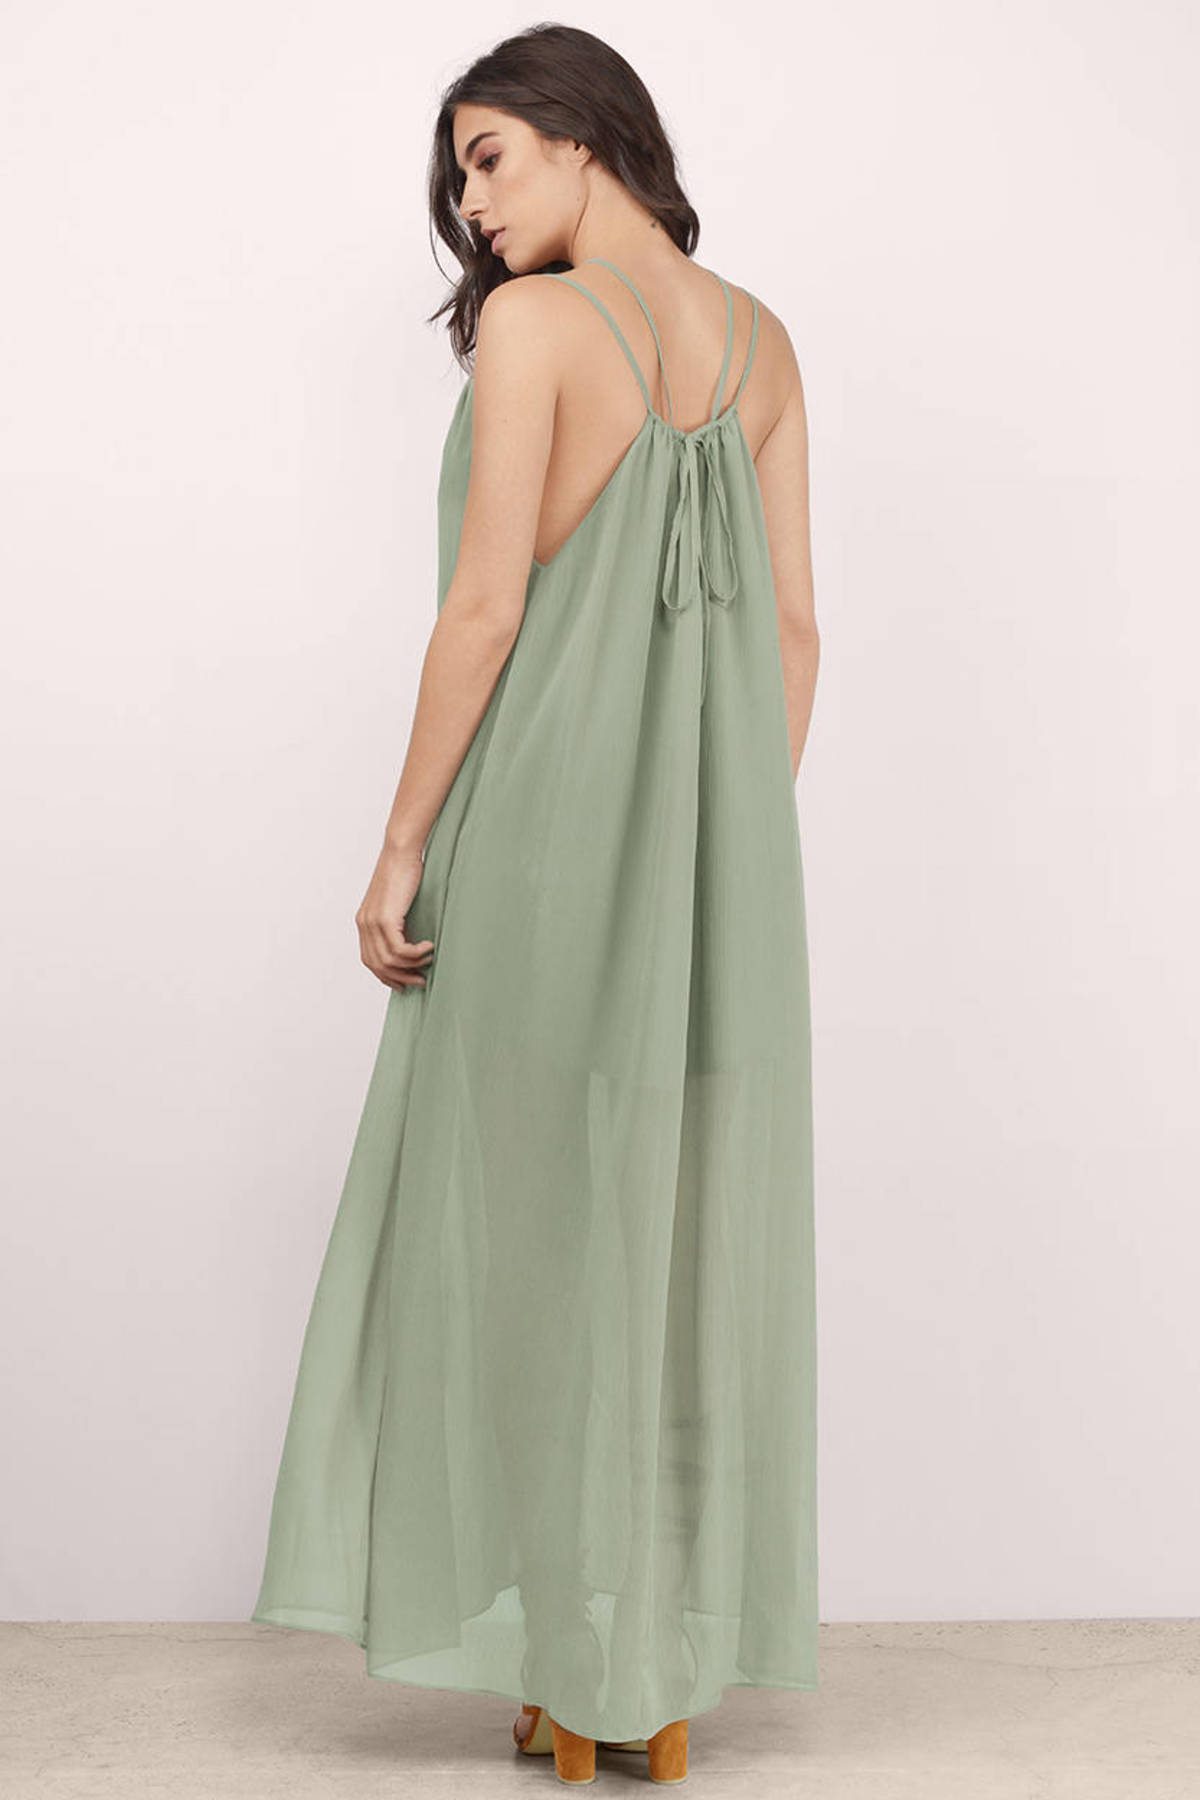 Trendy Sage Maxi Dress - green Dress - Strappy Dress - Maxi Dress